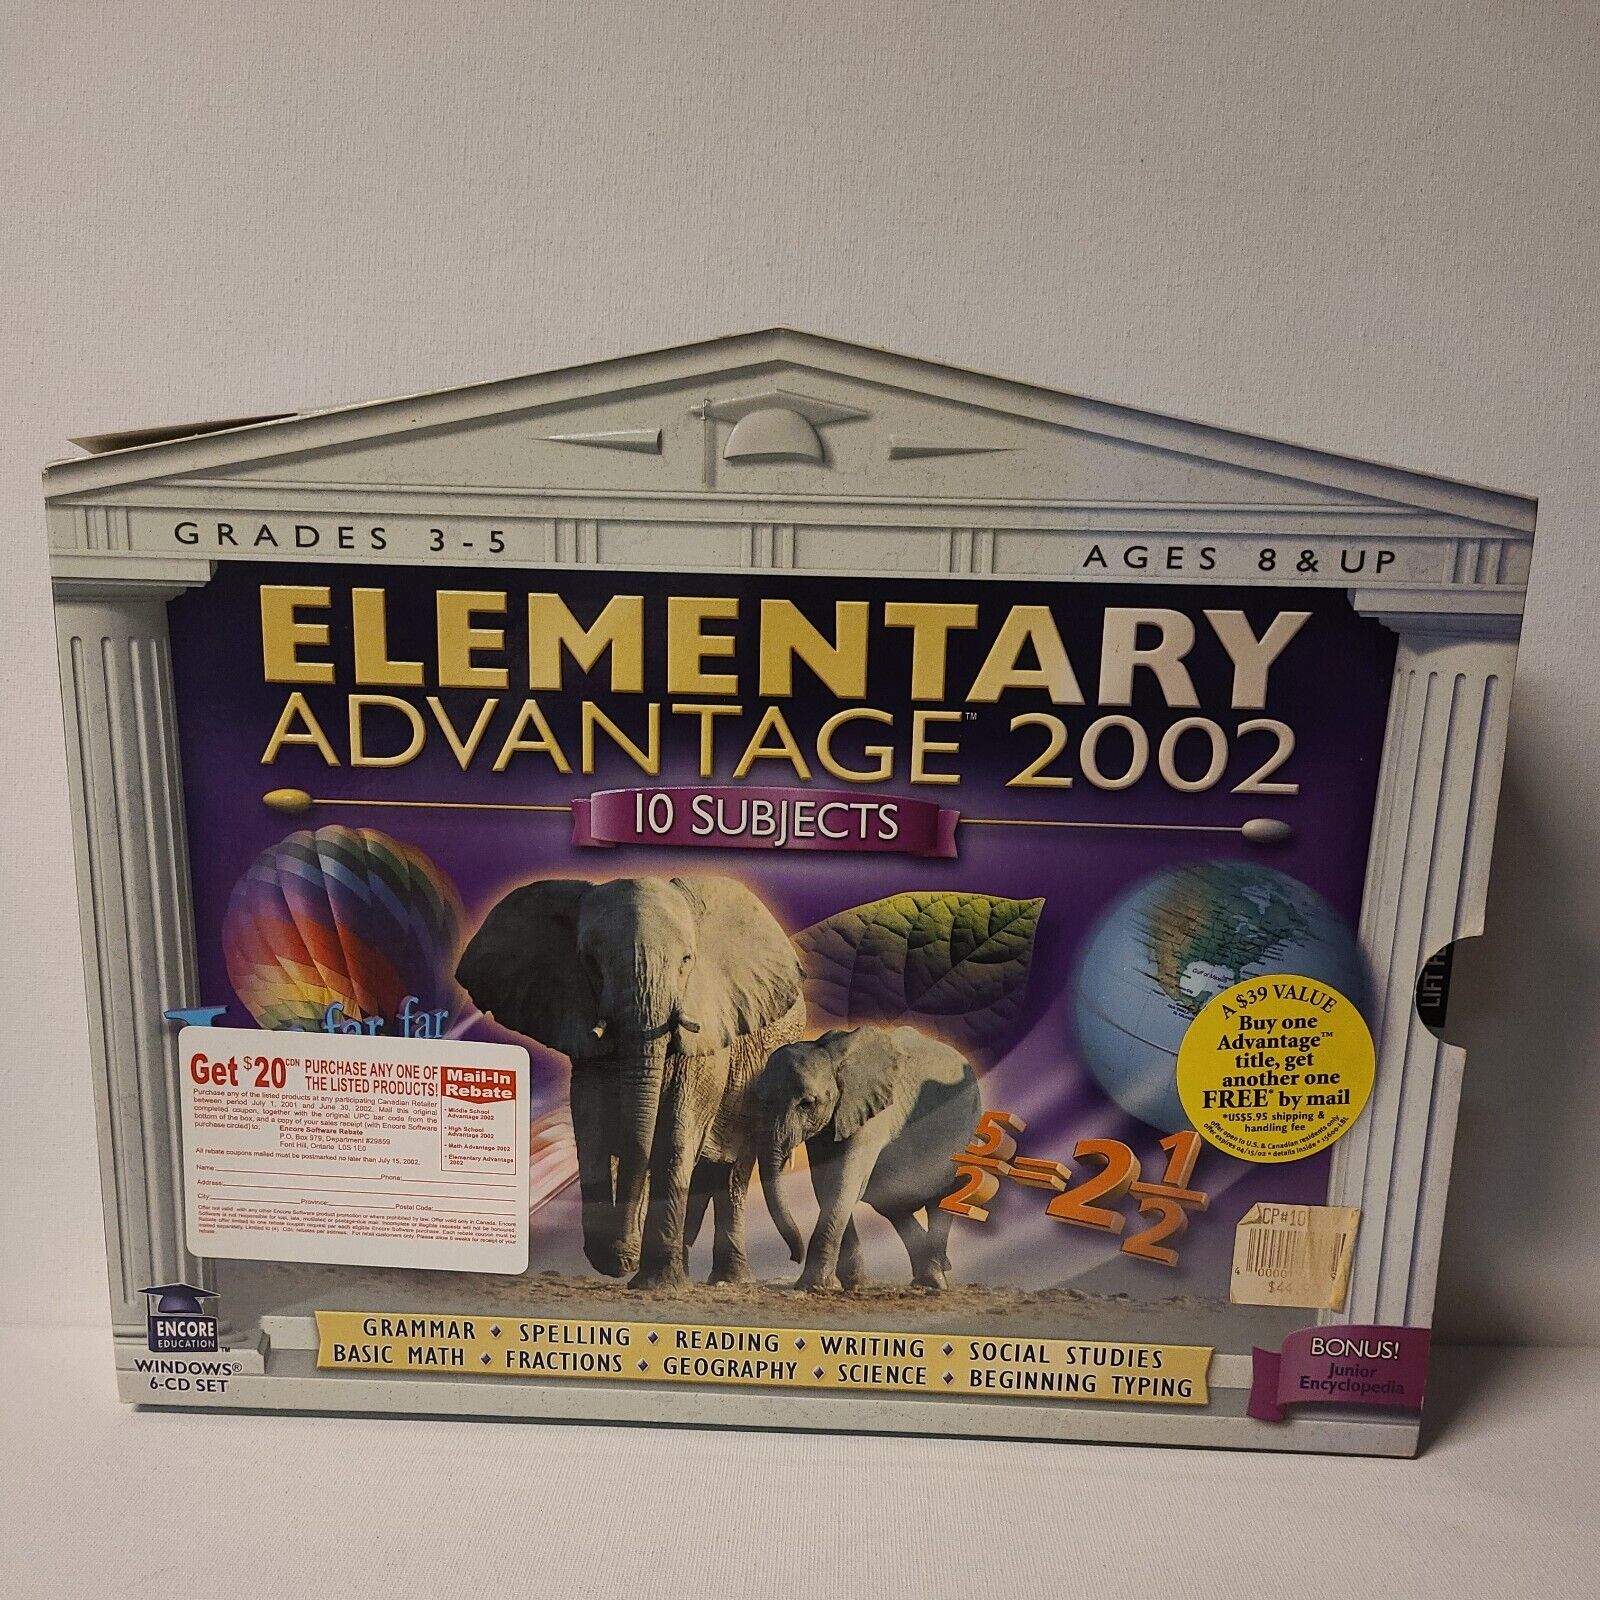 ENCORE - Elementary Advantages 2002 - Grades 3-5 PC 6-CD Set Big Box Set